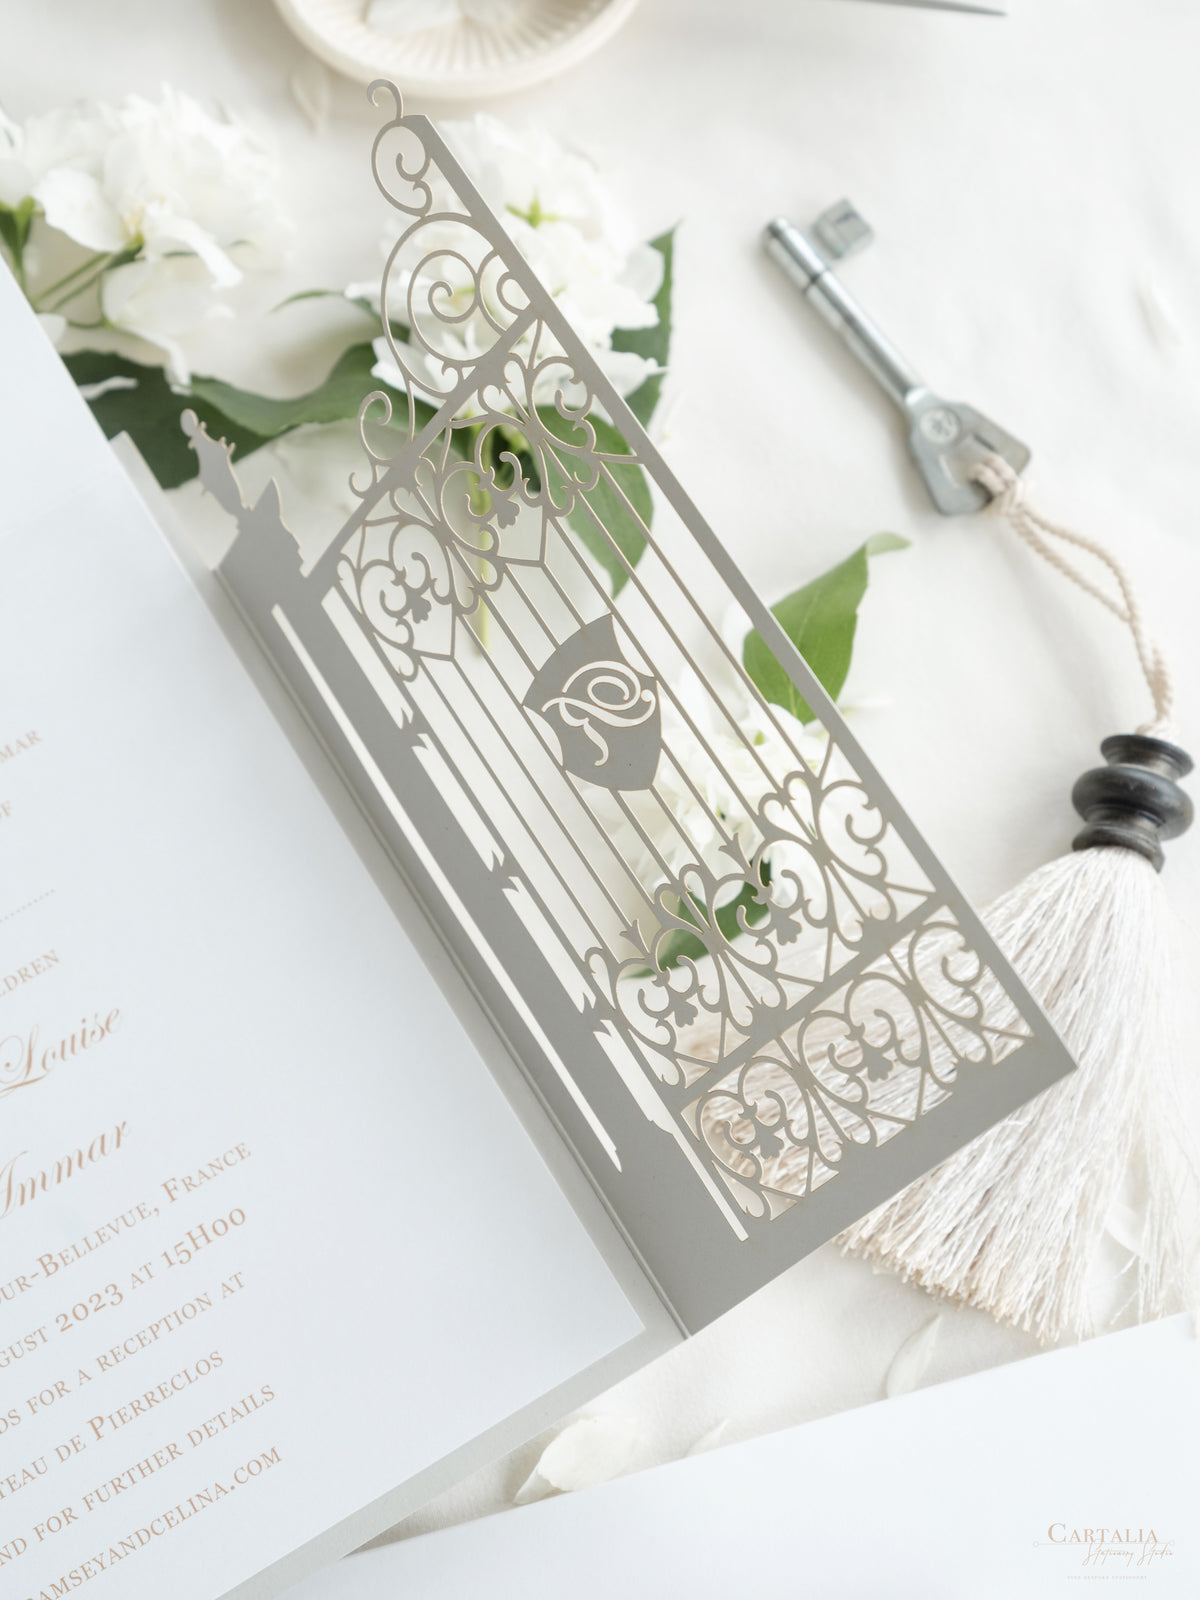 Invitación de boda frustrada con corte láser y puerta ornamental para su propio lugar.